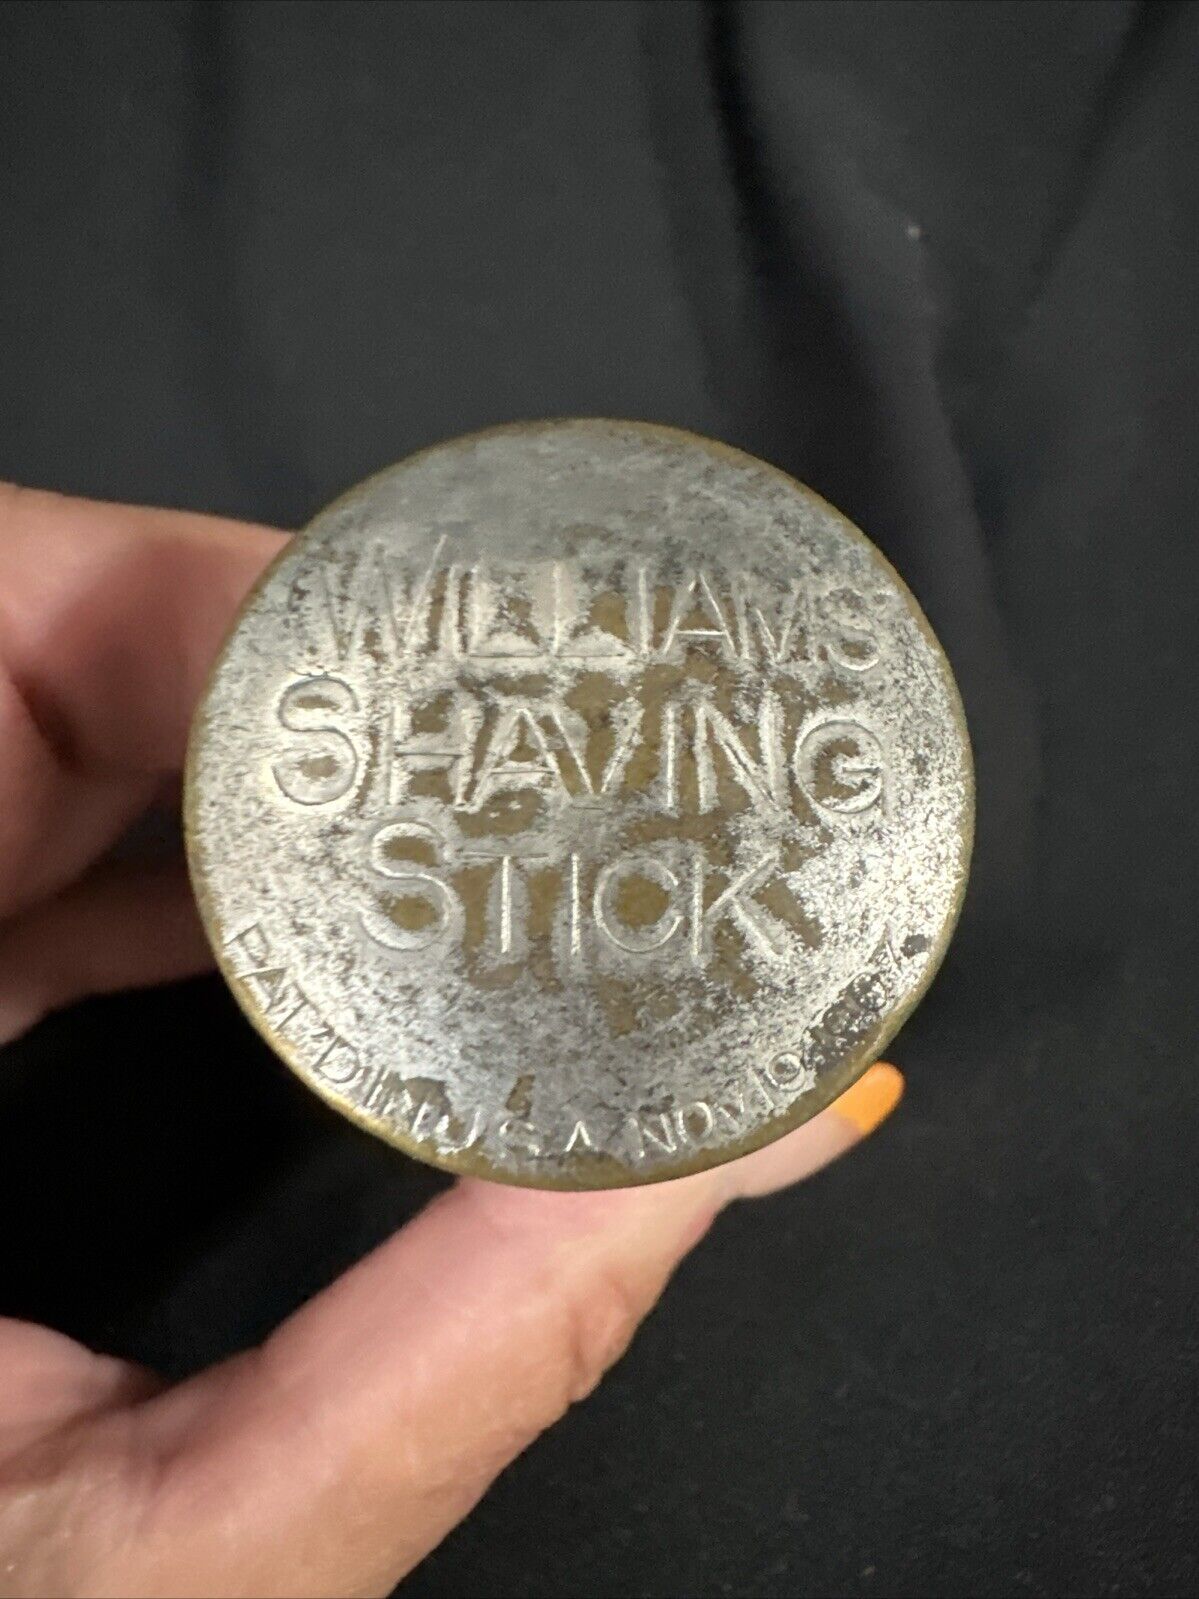 WW 11 Military Shaving Box J B Williams Co Vintage